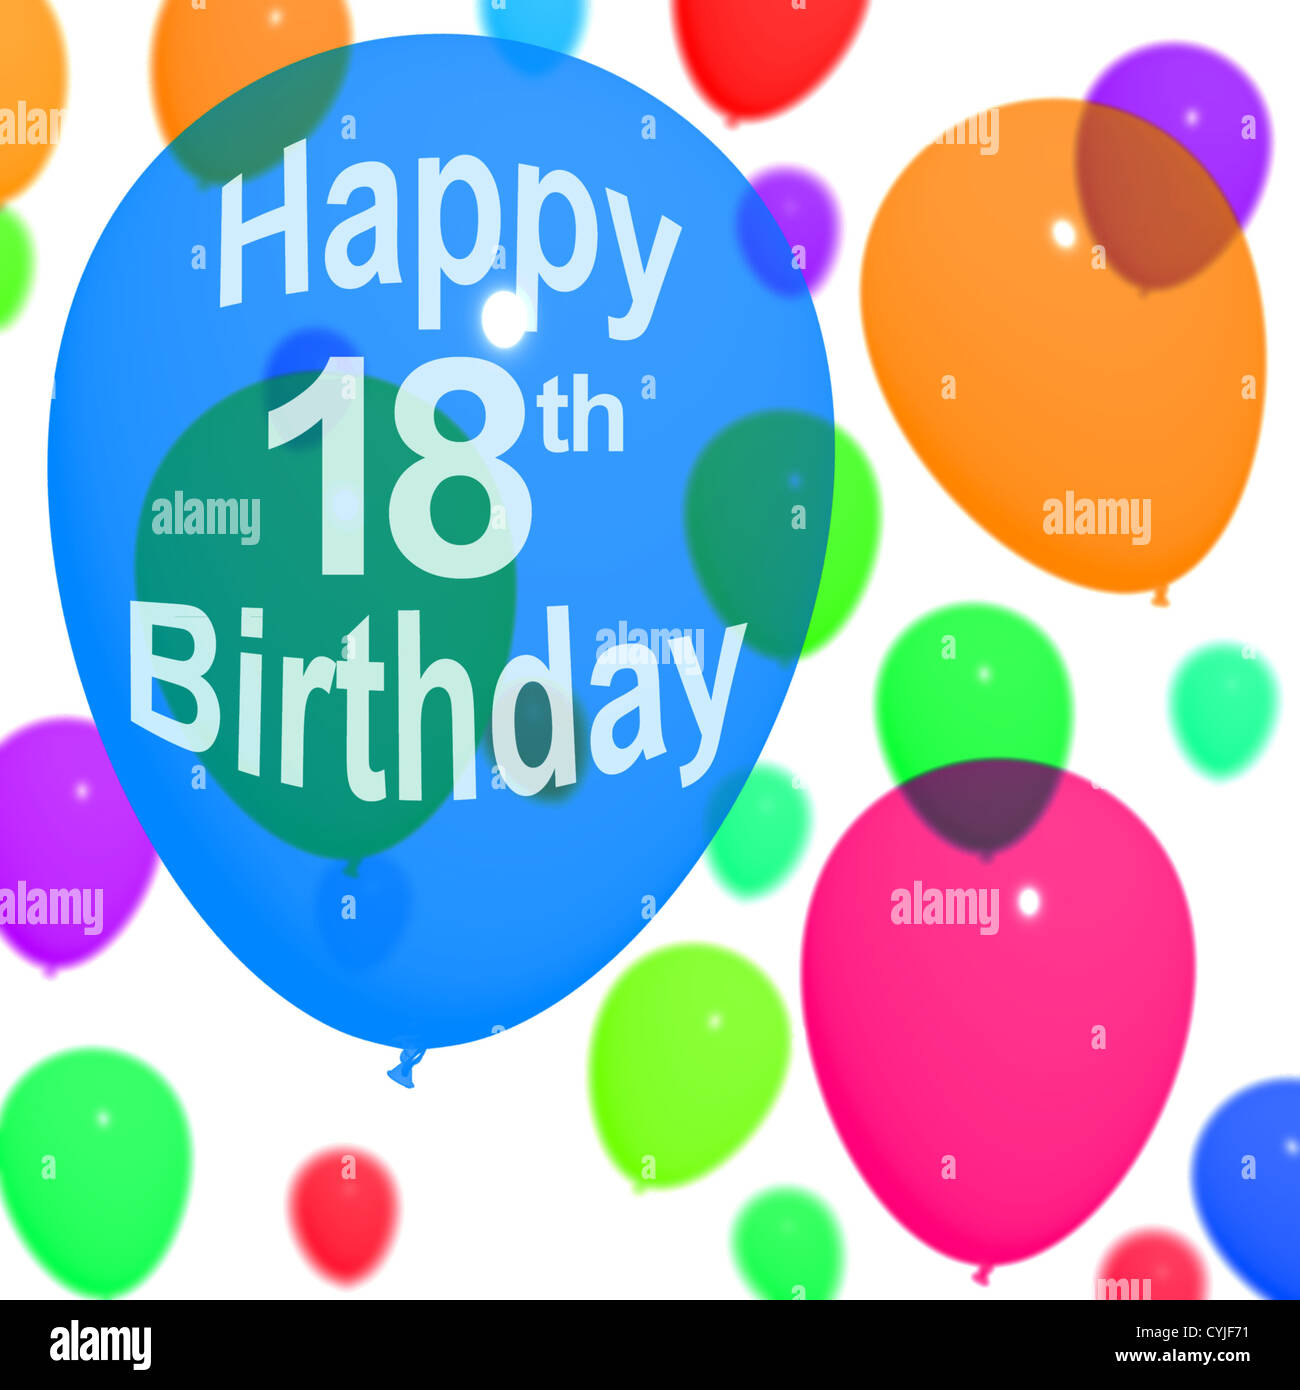 Ballons multicolores pour célébrer un 18e ou 18e anniversaire Banque D'Images